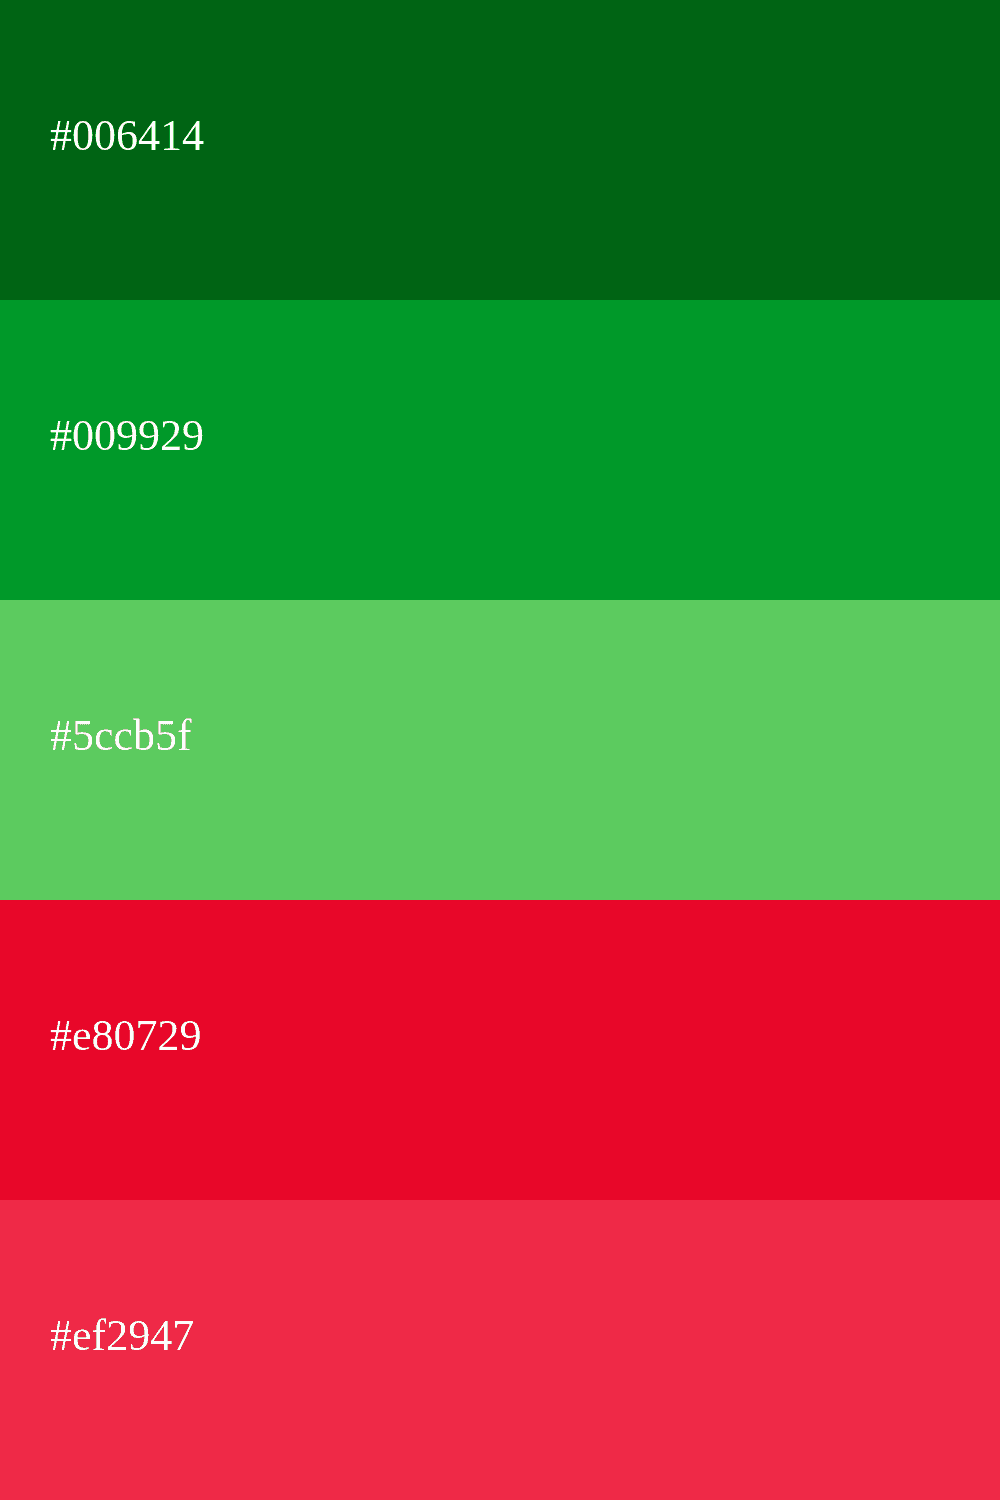 cor verde e vermelha